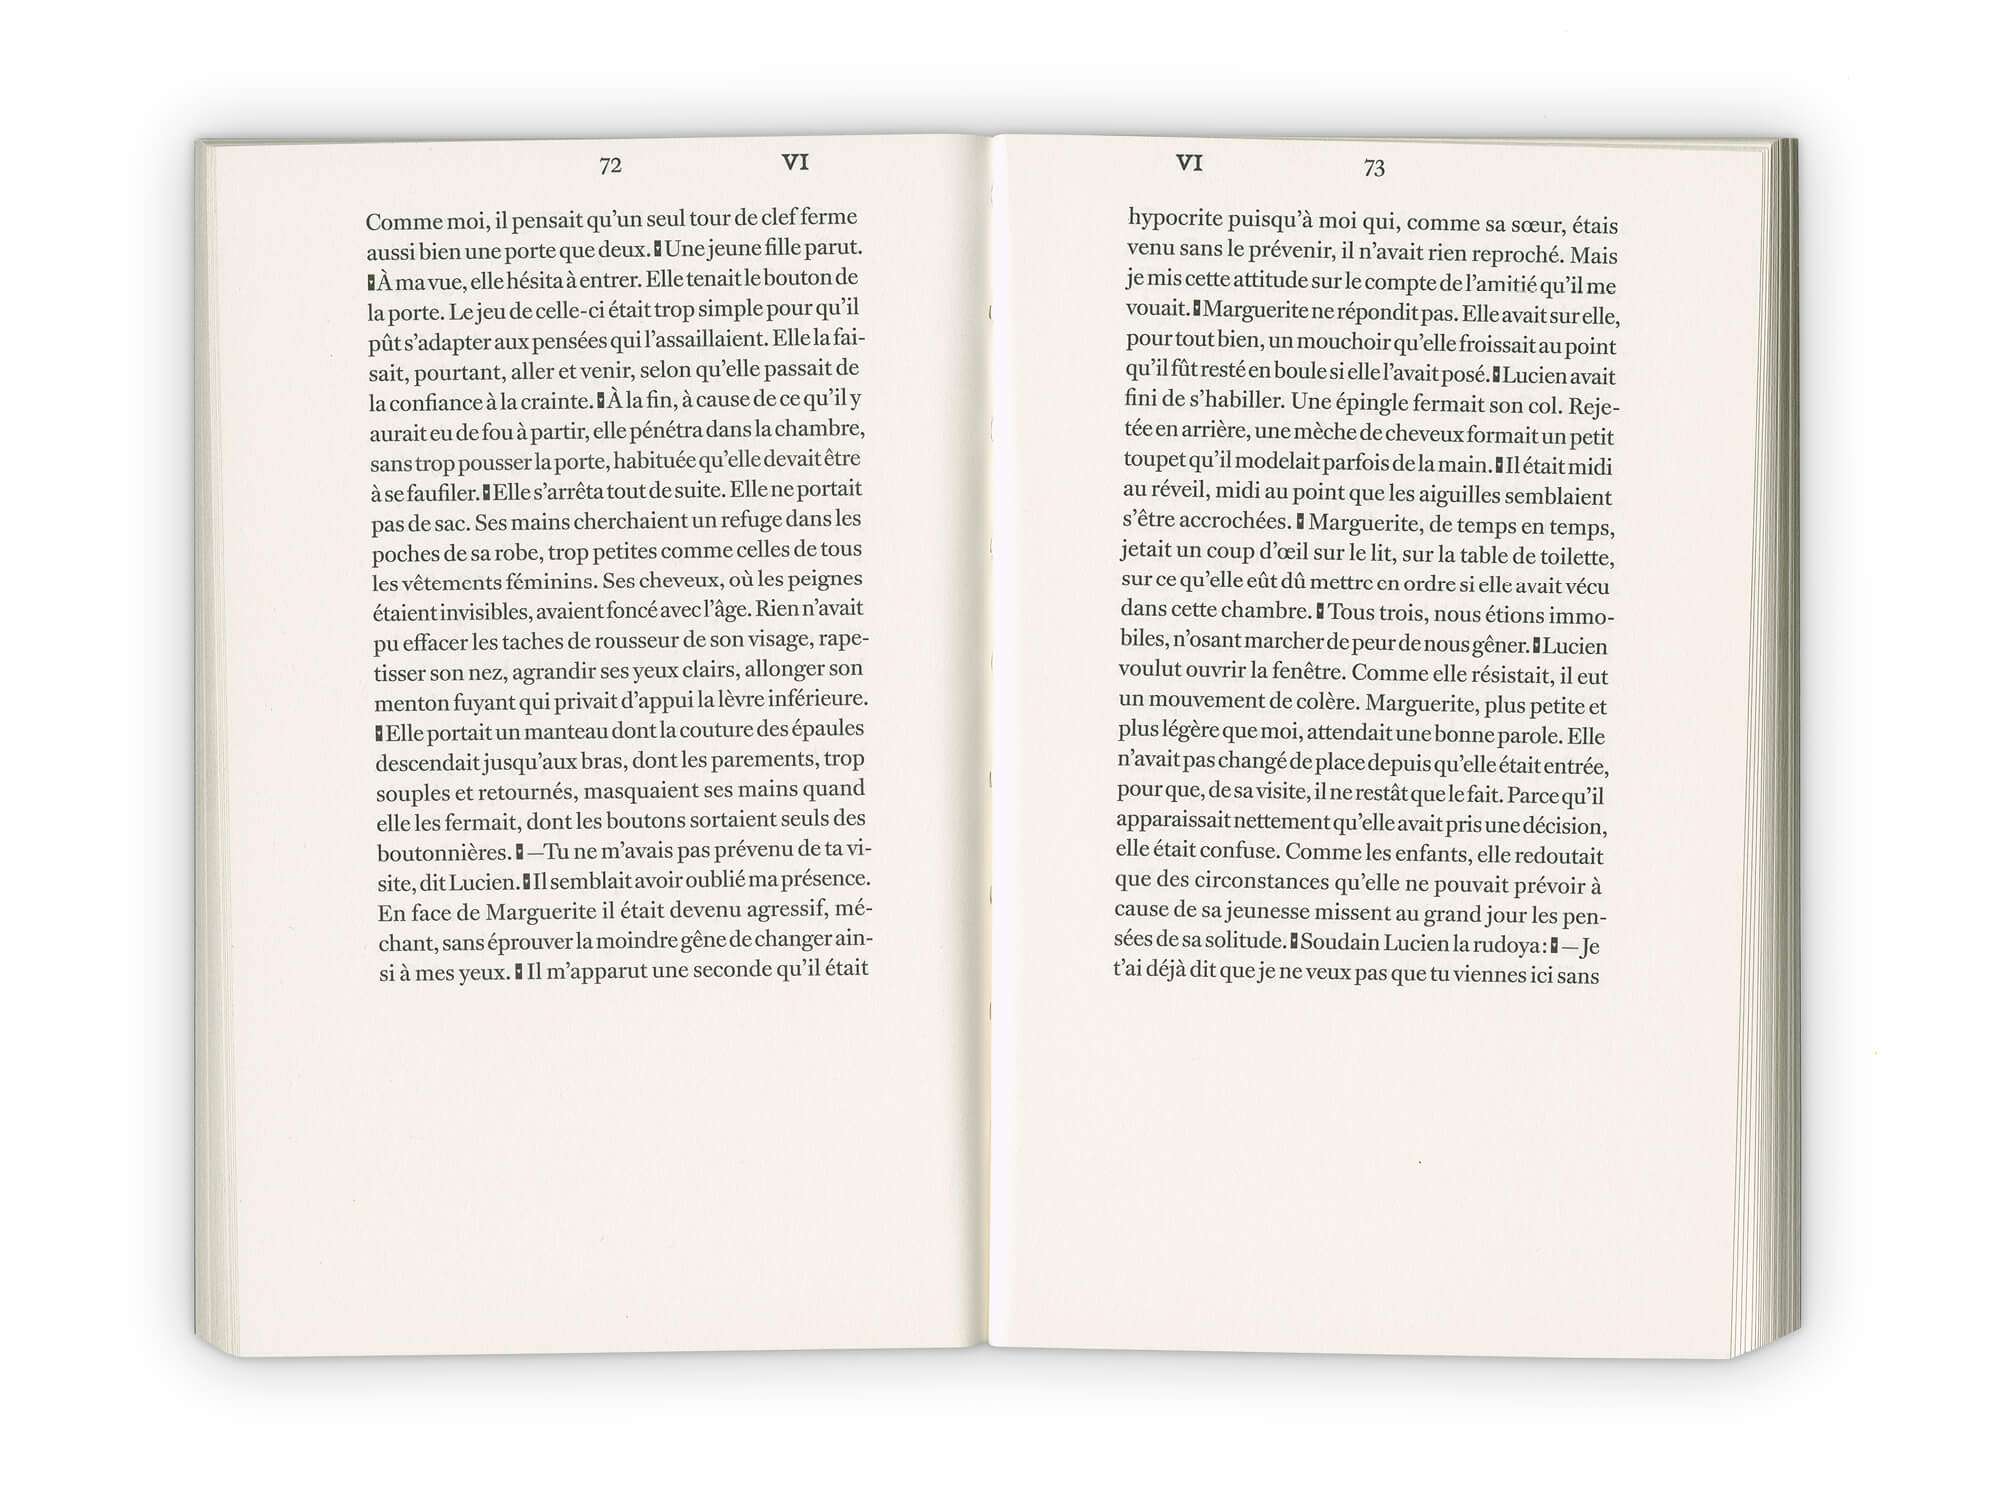 Intérieur du roman d'Emmanuel Bove, Armand, aux édition Cent Pages